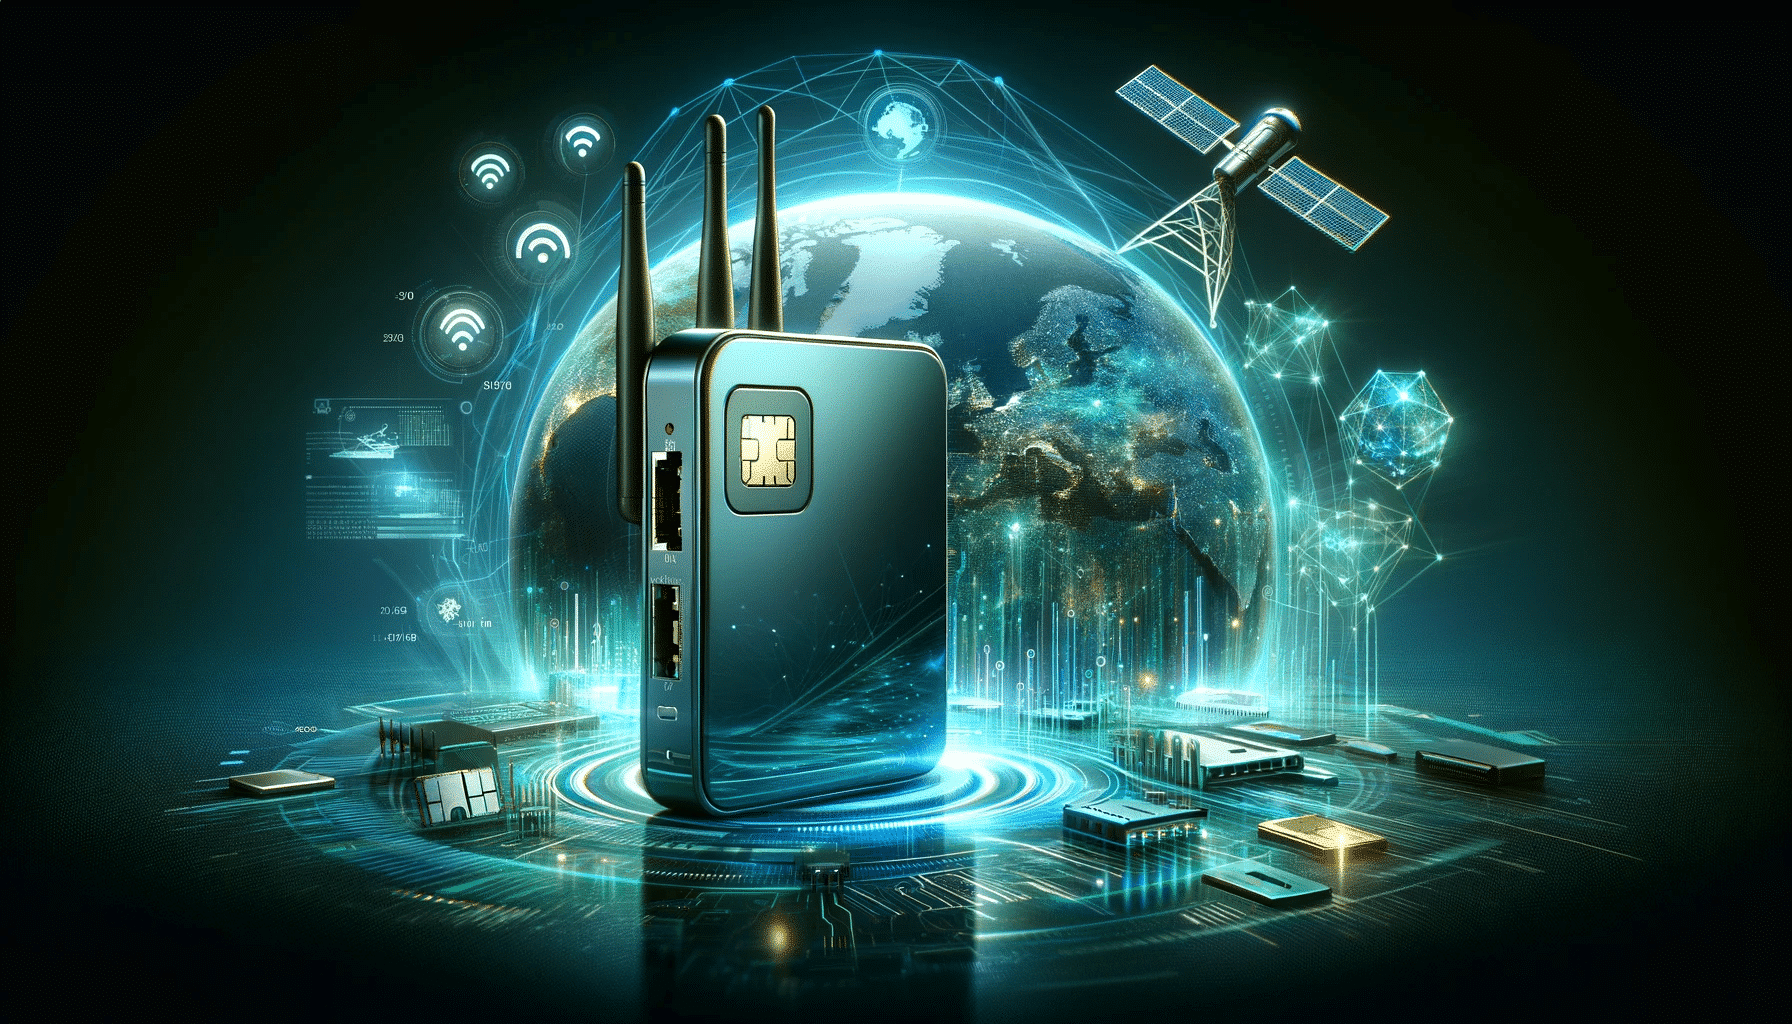 Modernes Design eines mobilen Routers mit SIM-Karten-Slot, umgeben von Symbolen für Netzwerkkonnektivität, digitalen Datenströmen und Satellitenbildern, die die Integration von Starlink-Technologie darstellen, auf einem futuristischen, digitalen Hintergrund in kühlen Blau- und Grüntönen, symbolisch für fortschrittliche mobile Internettechnologie.